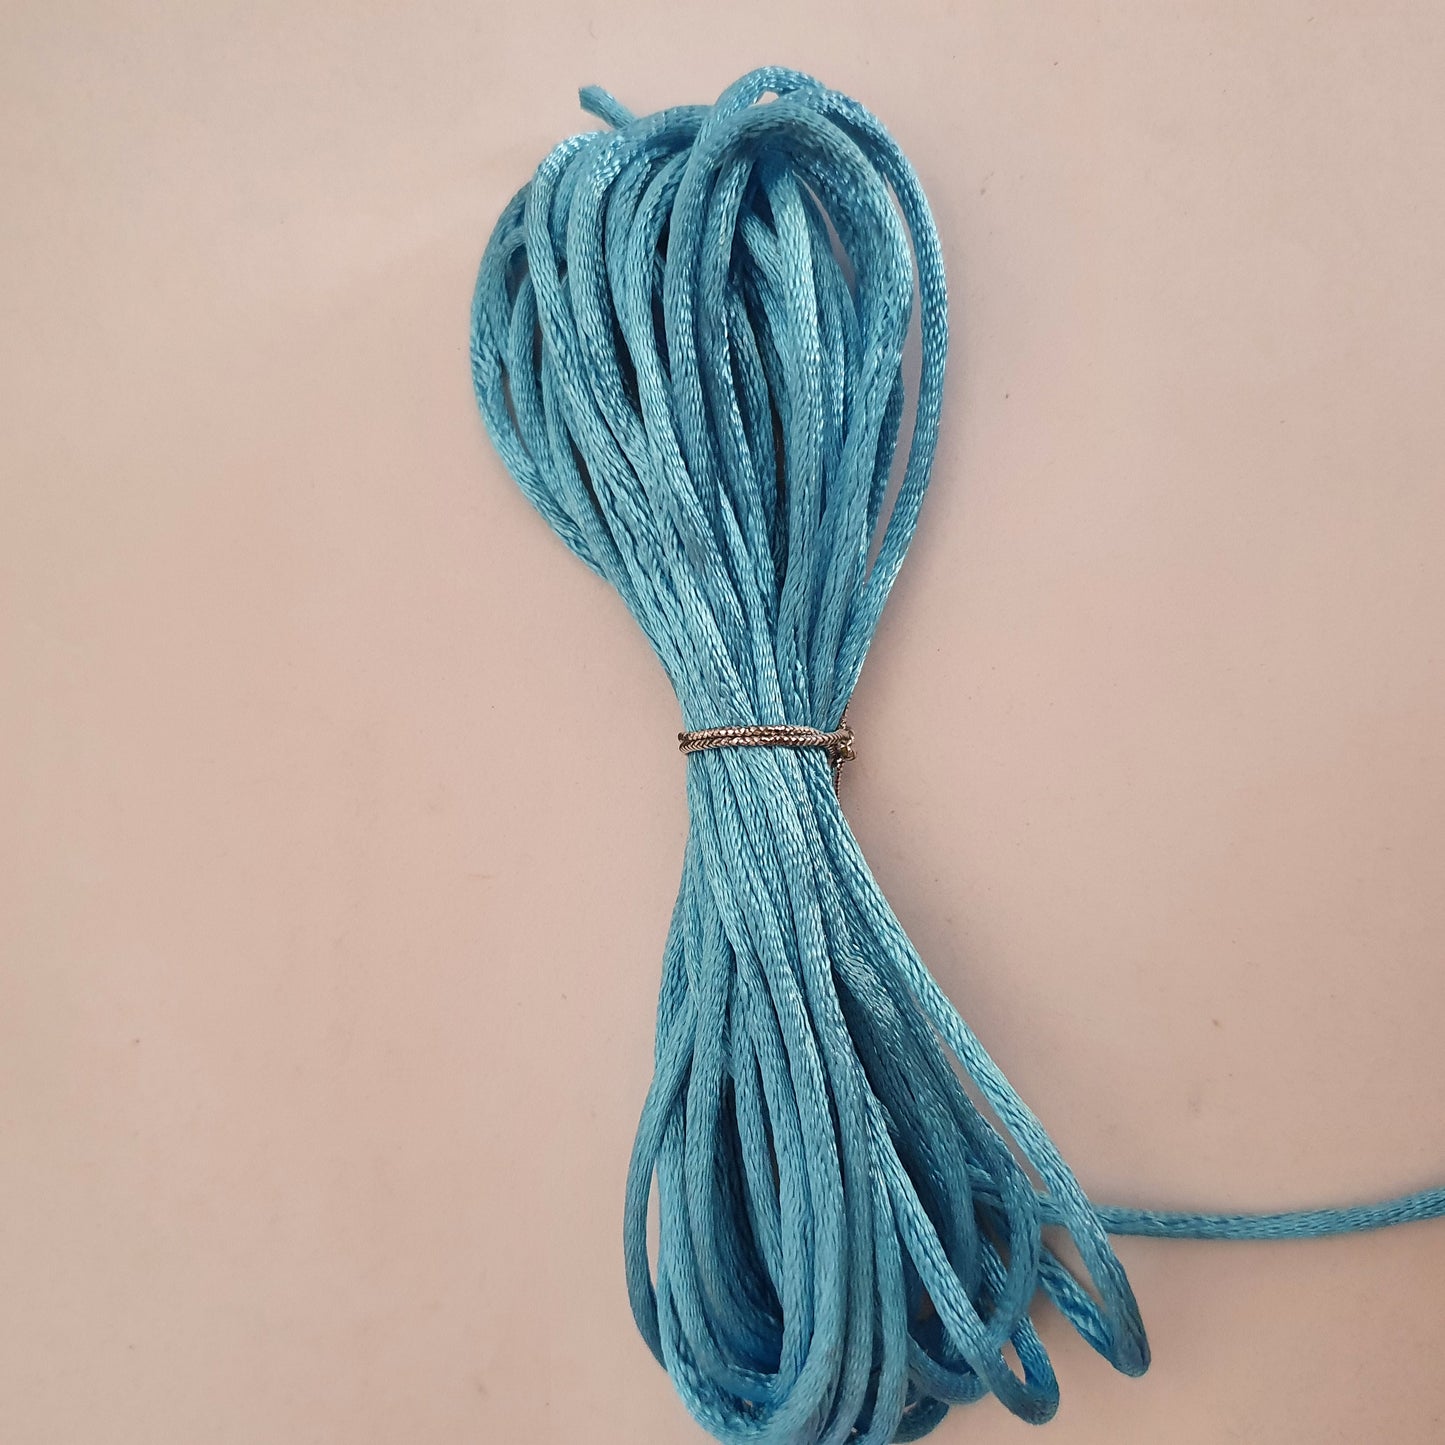 Cordone silk in Nylon per Braccialetti - lotto 5 metri - scegli il colore